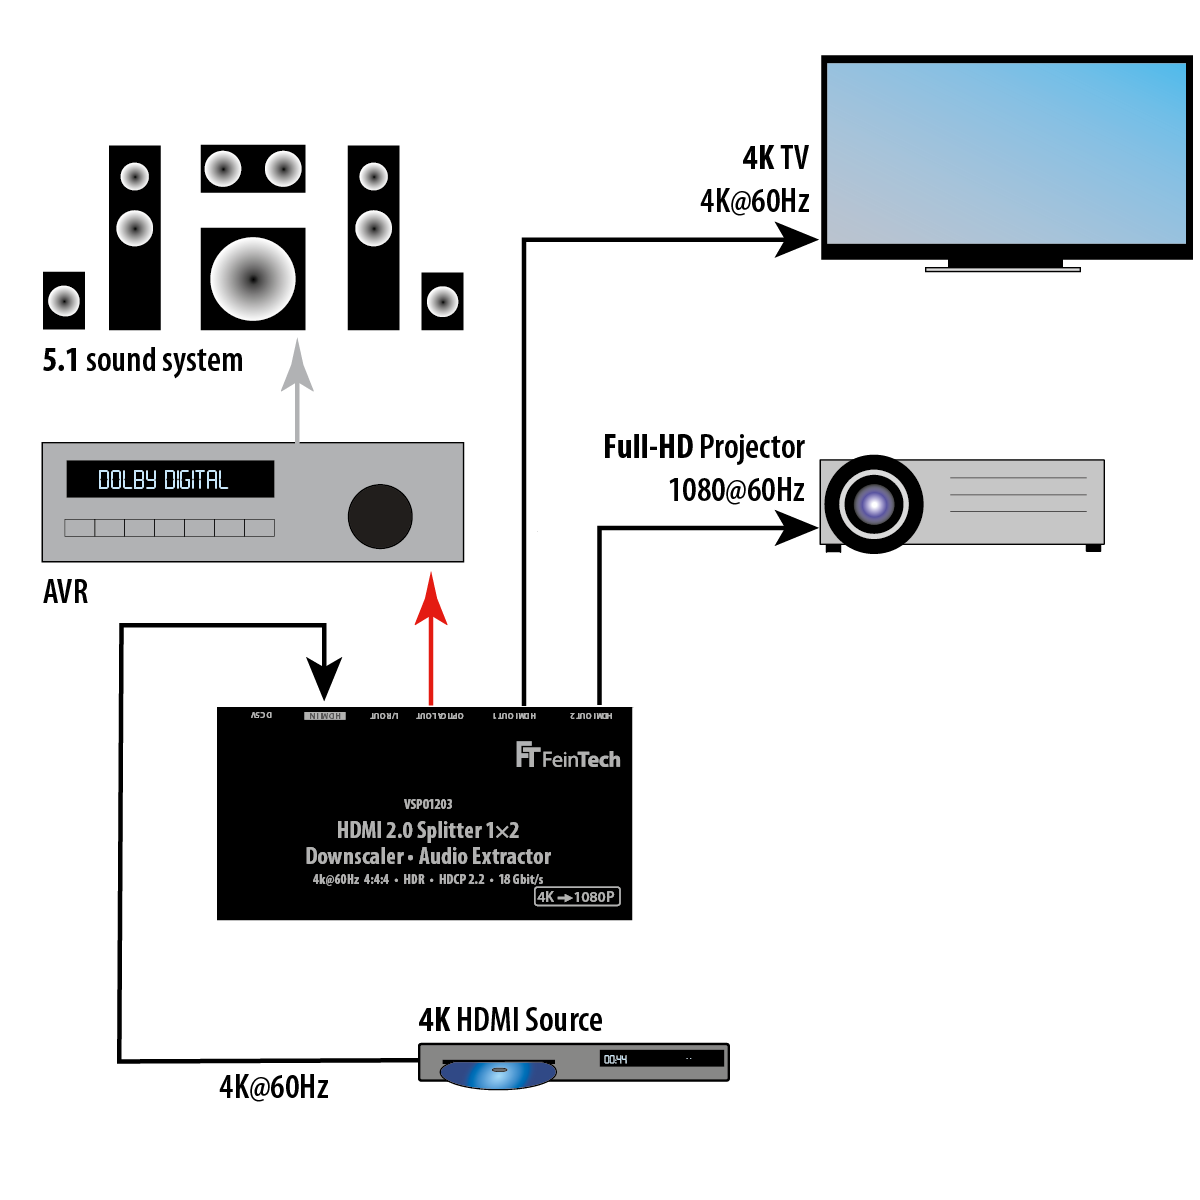 FEINTECH VSP01203 Verteiler 2 HDMI Audio 1x HDMI Splitter mit Extractor